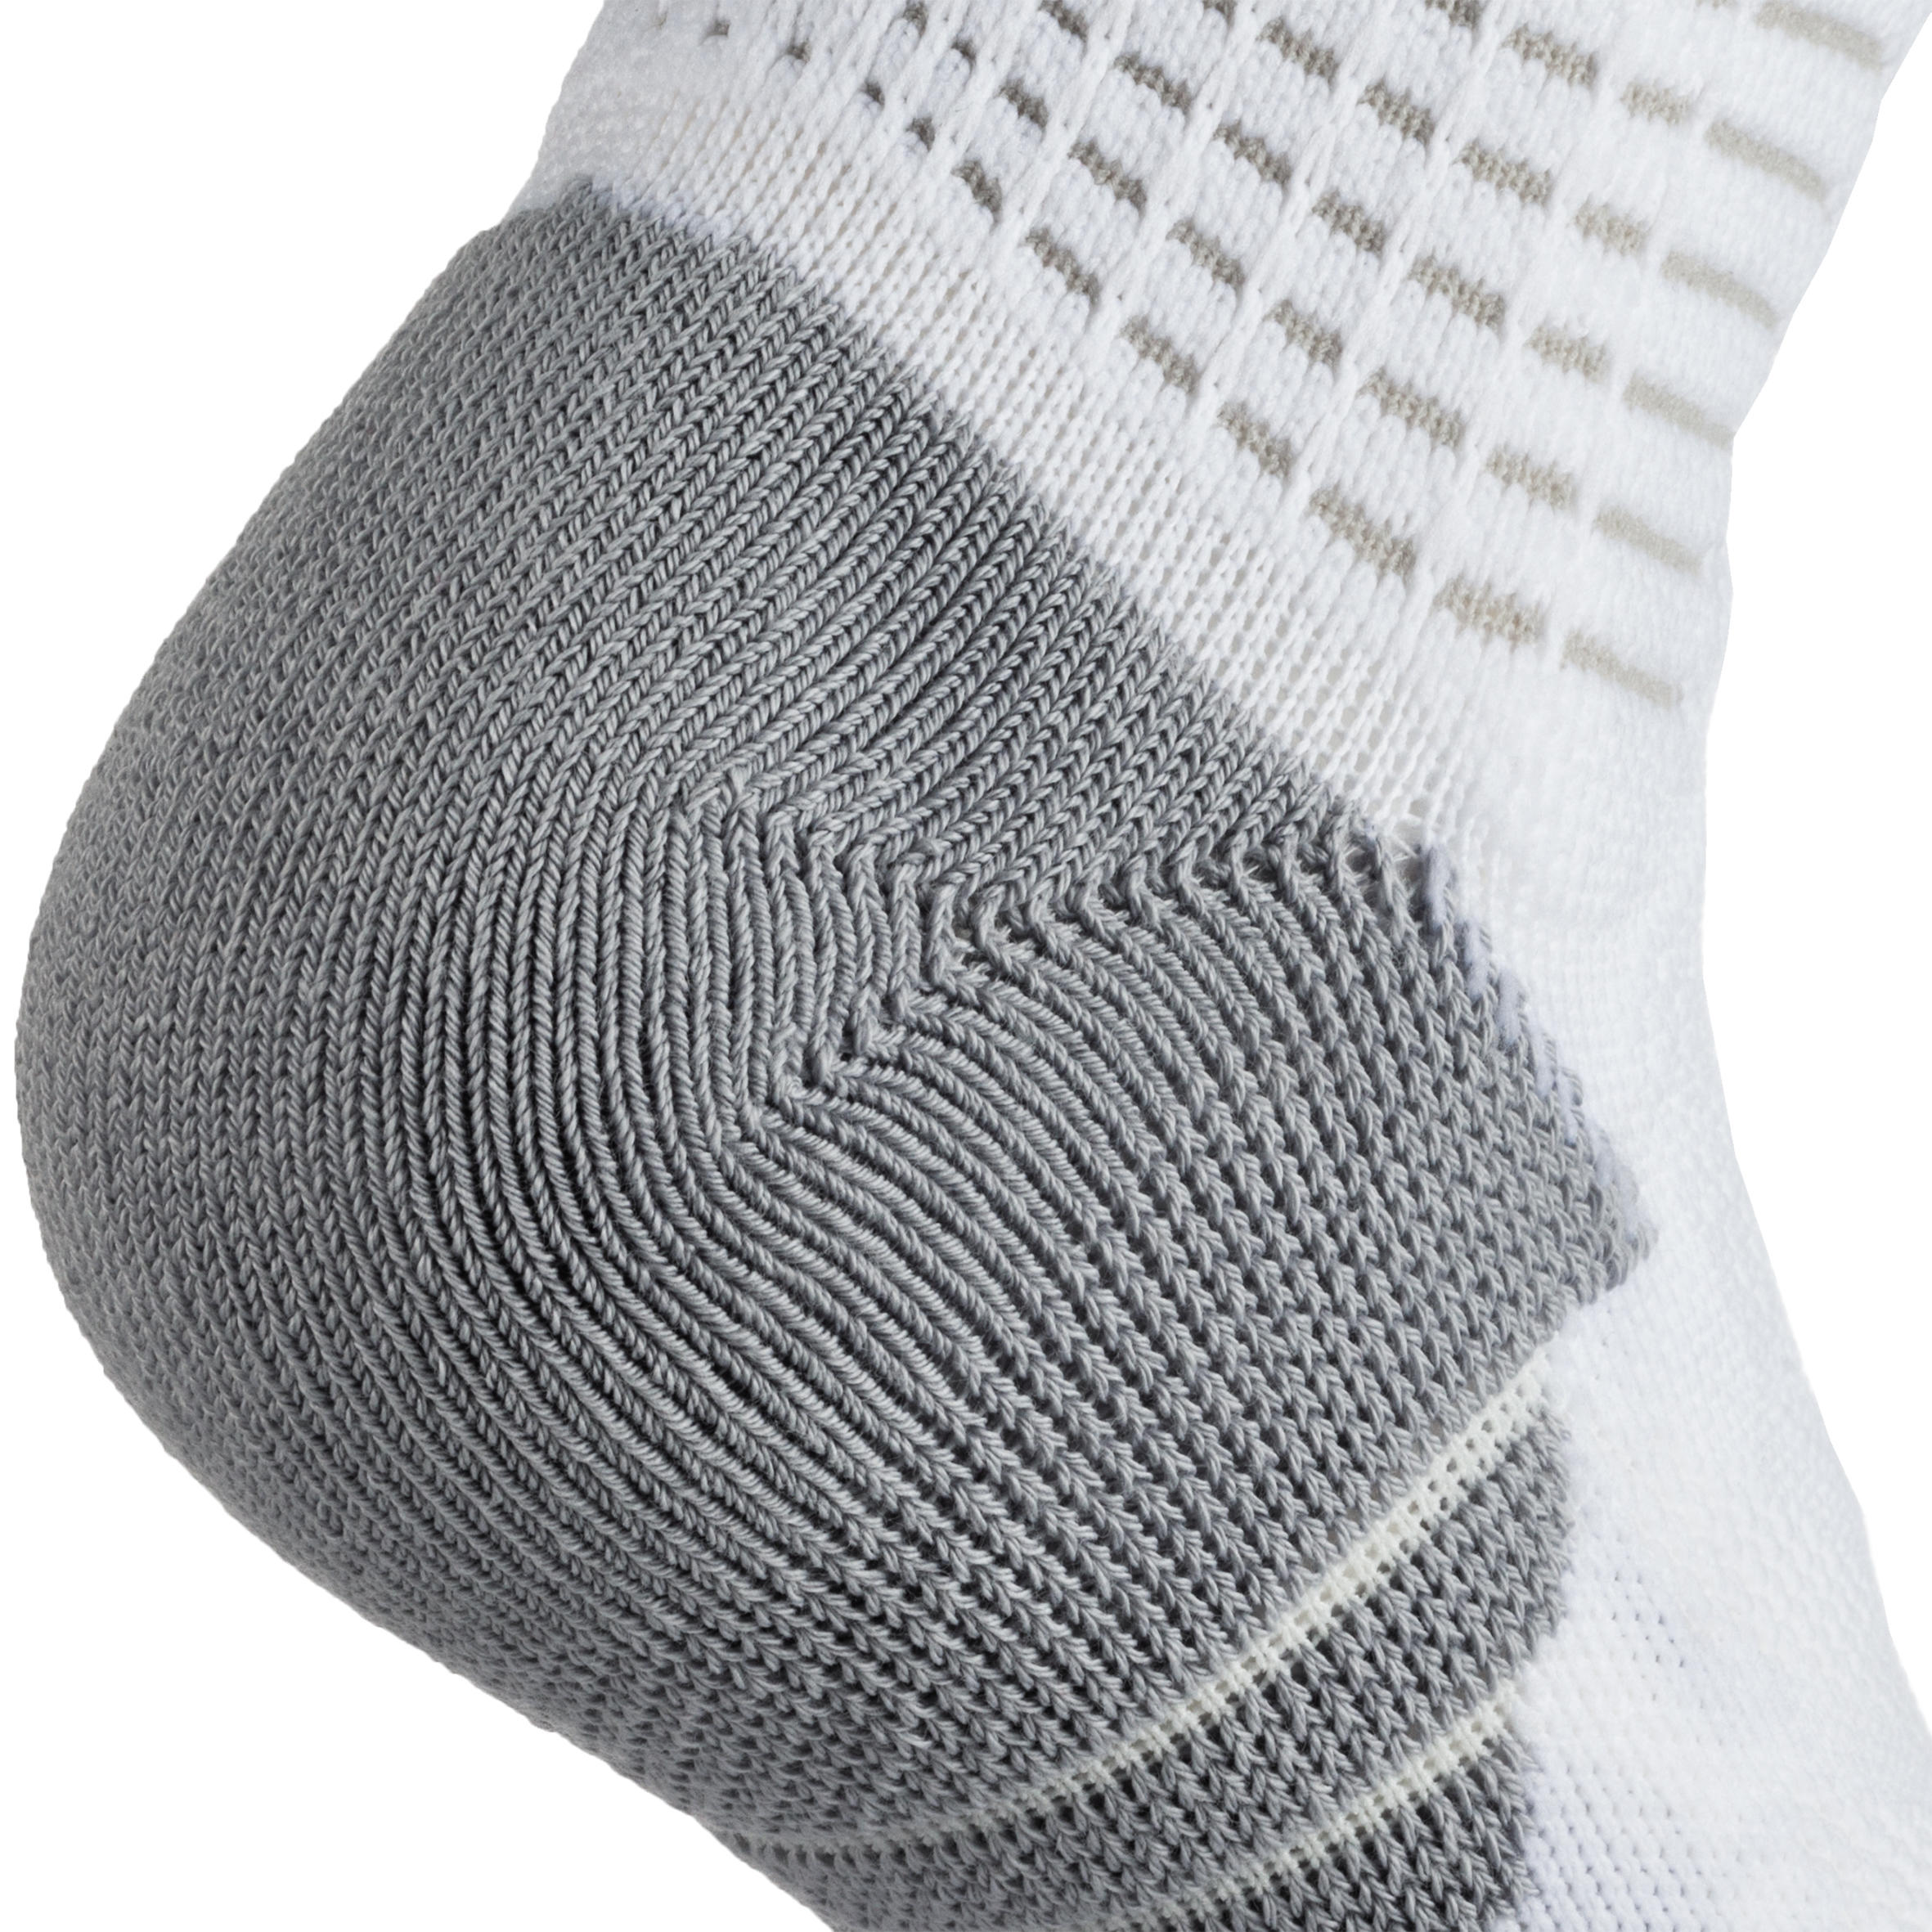 Men's/Women's Mid-Rise Basketball Socks SO900 - White 7/8